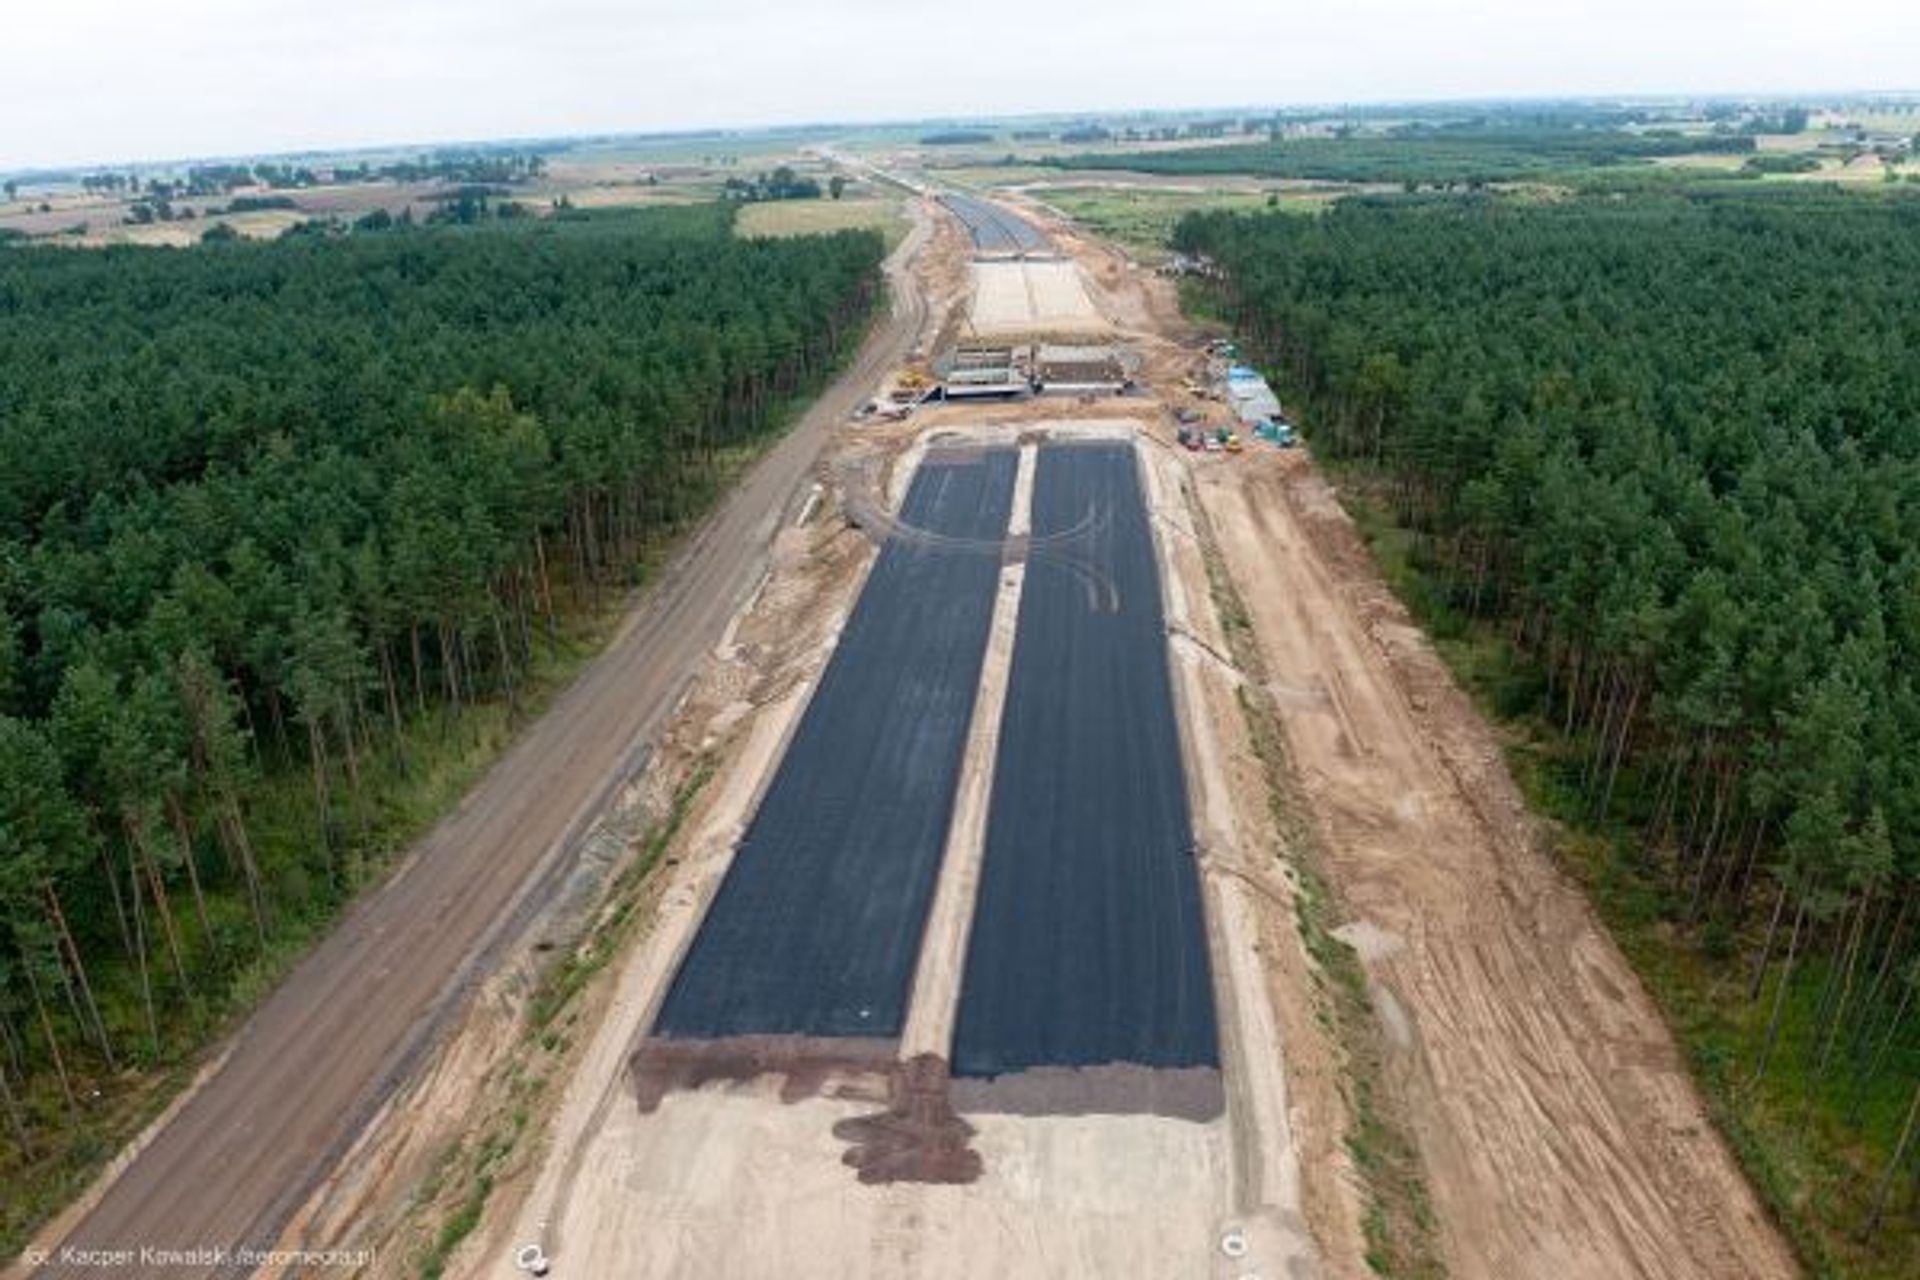  Nowak obiecuje budowę trasy Via Baltica